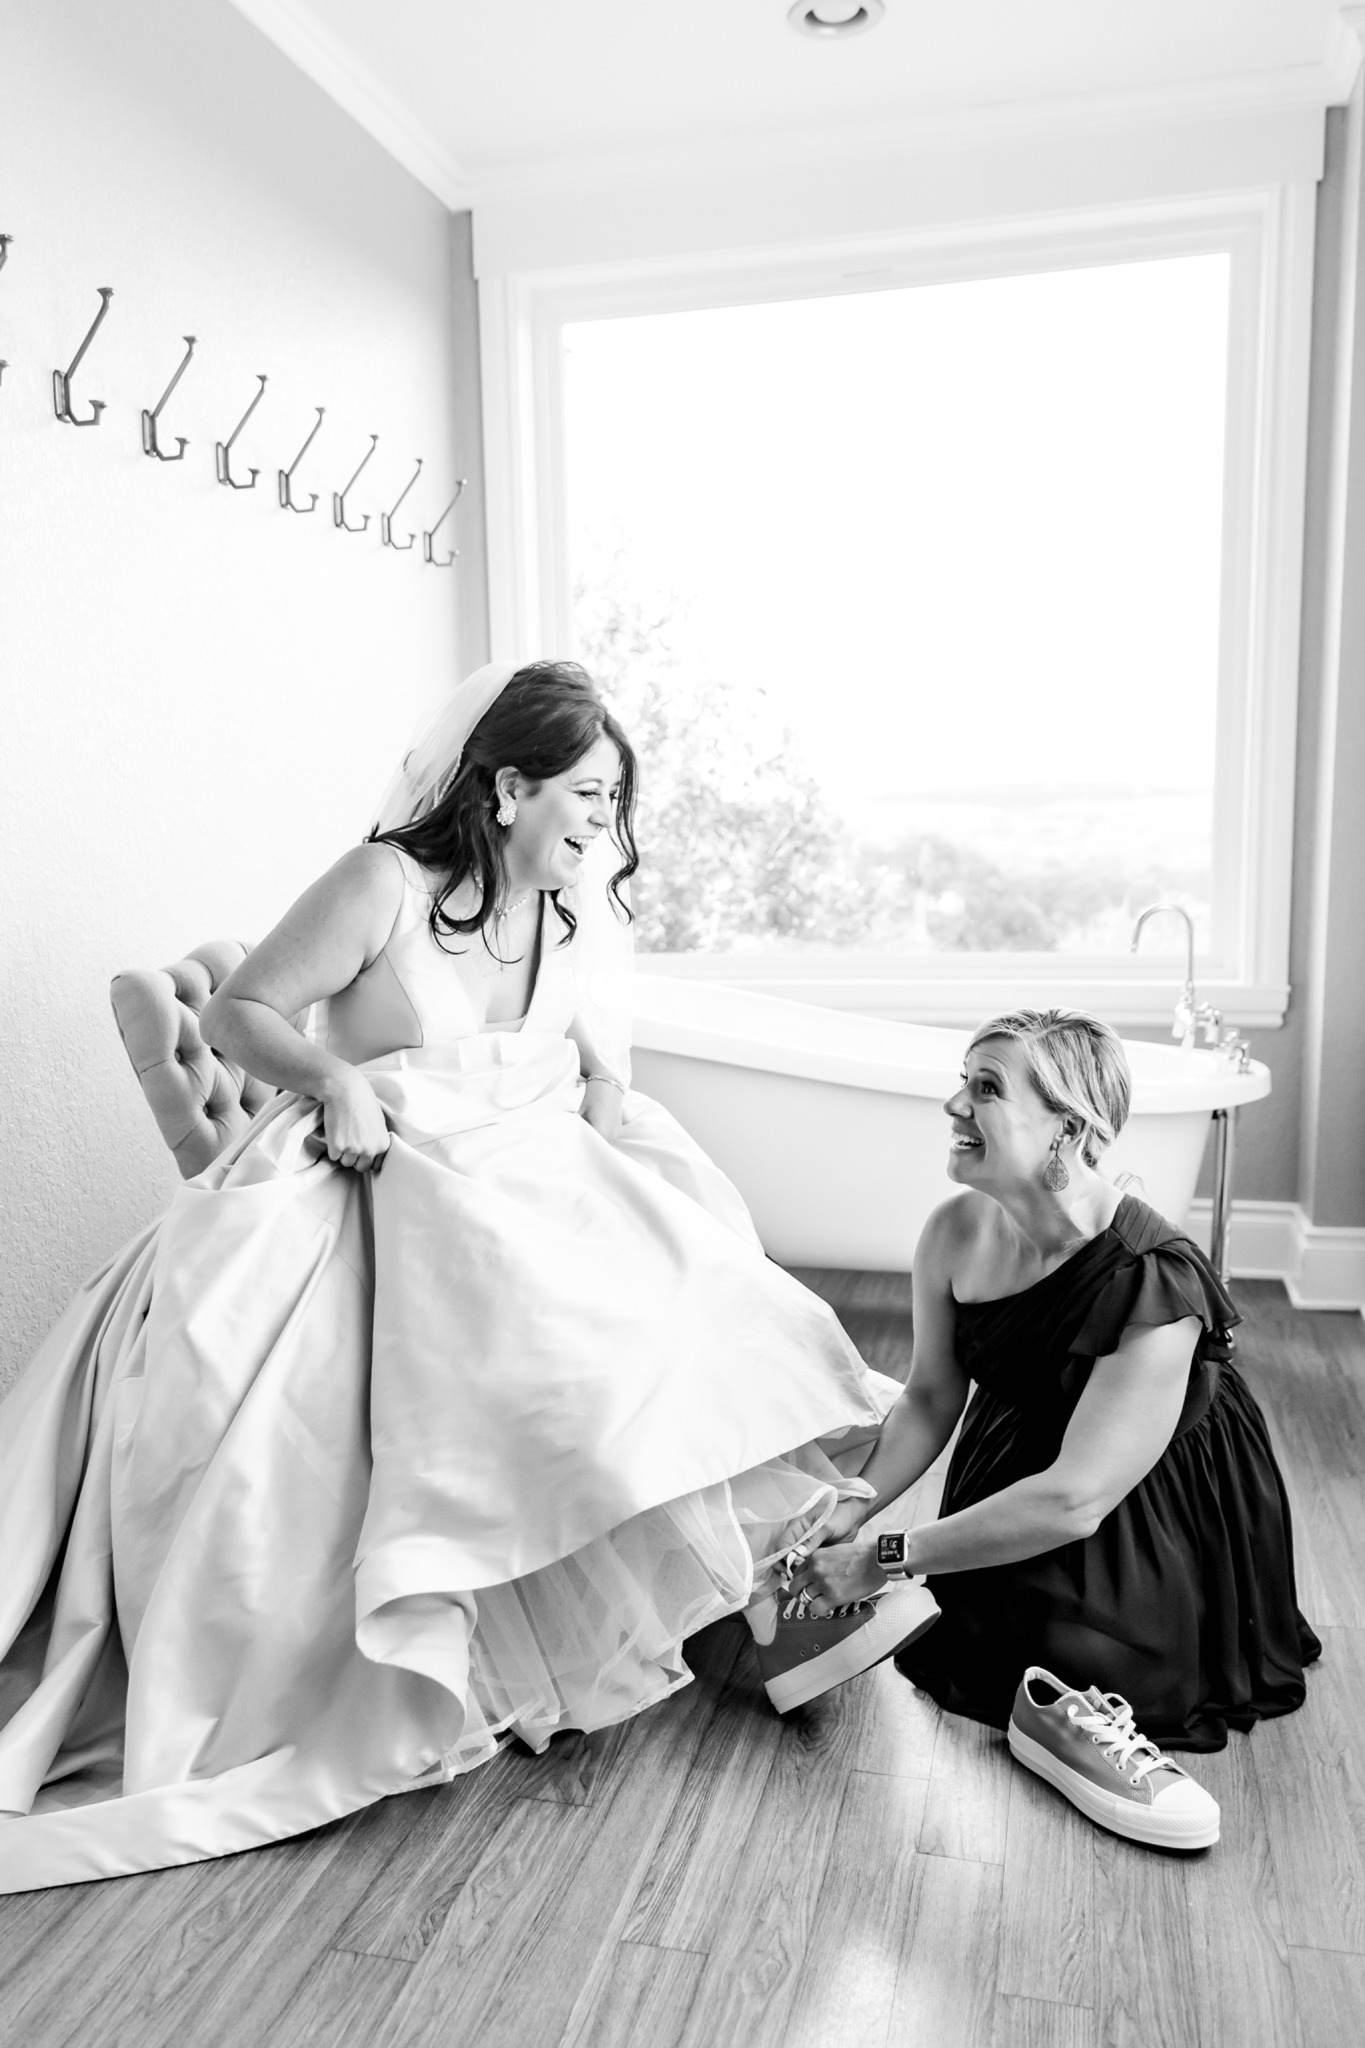 A Black, Silver & Red Wedding at Kendall Point in Boerne, TX by Dawn Elizabeth Studios, Boerne Wedding Photographer